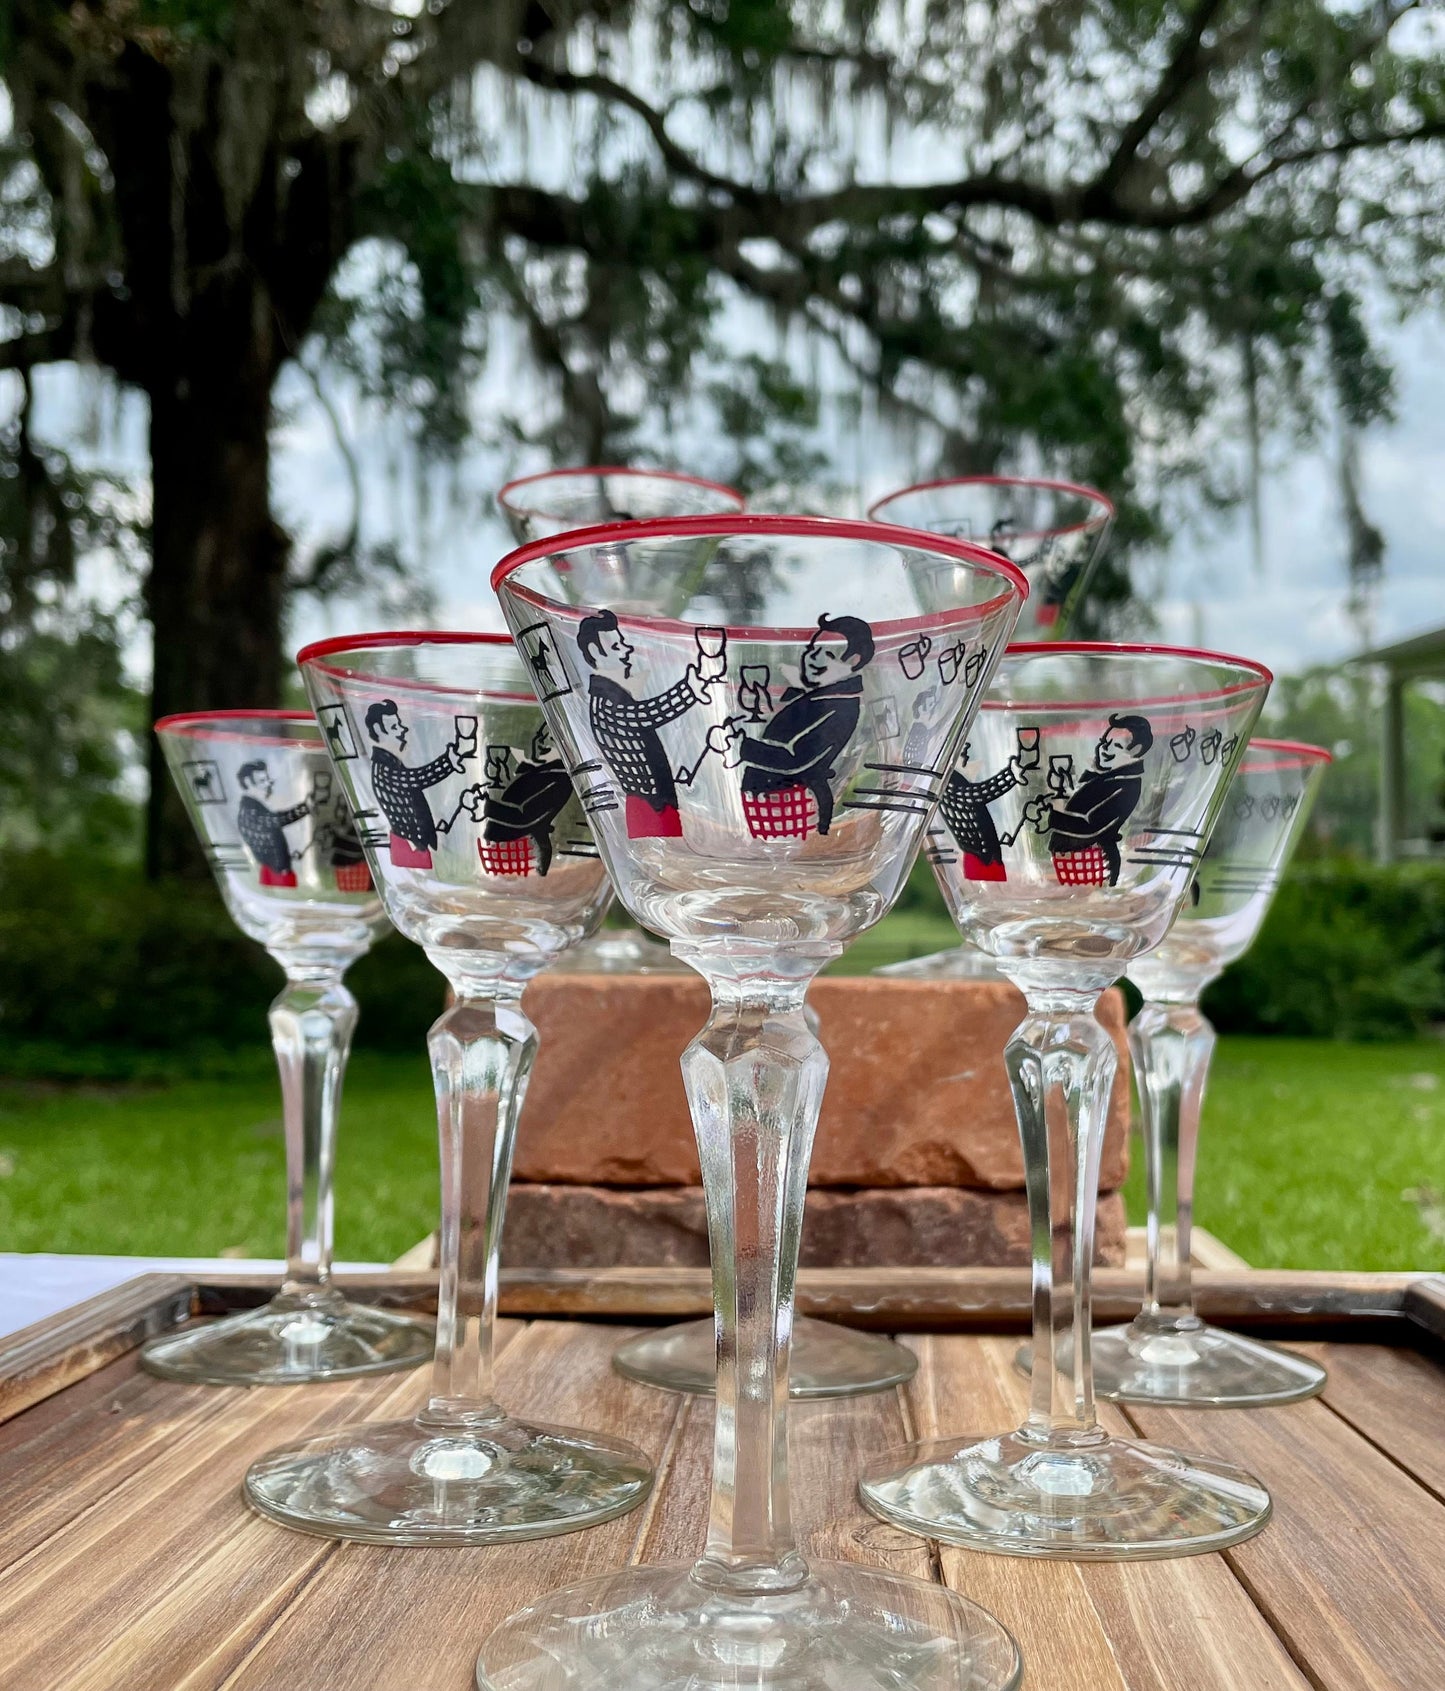 Shimmering Chrome Martini Glasses (set of 8)